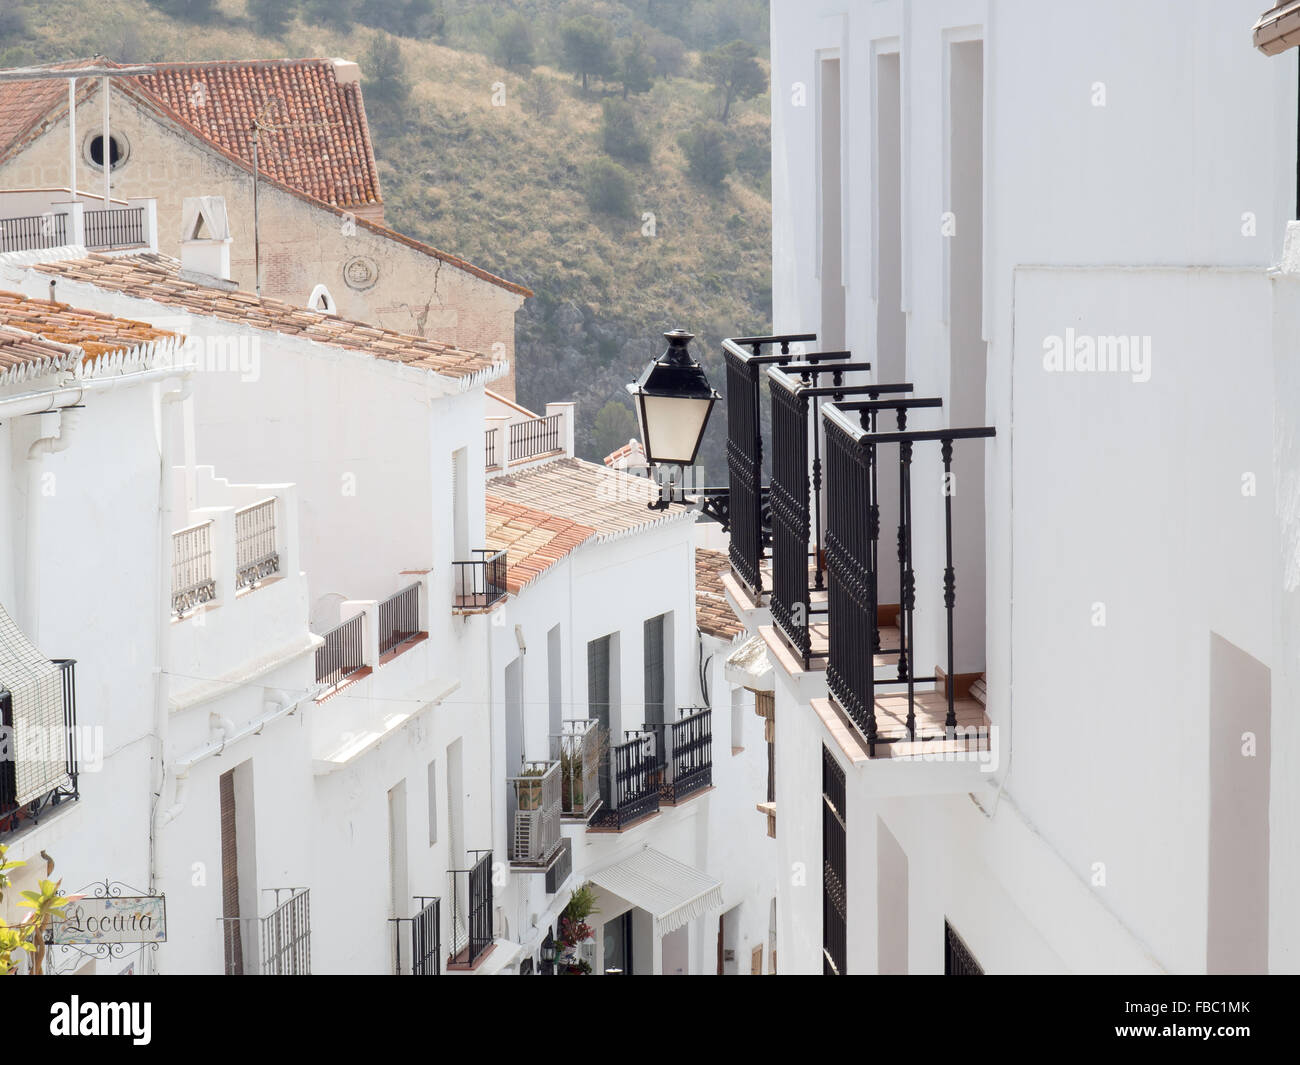 Frigiliana a white town near Nerja, Costa Del Sol, Andalusia, Spain, Stock Photo